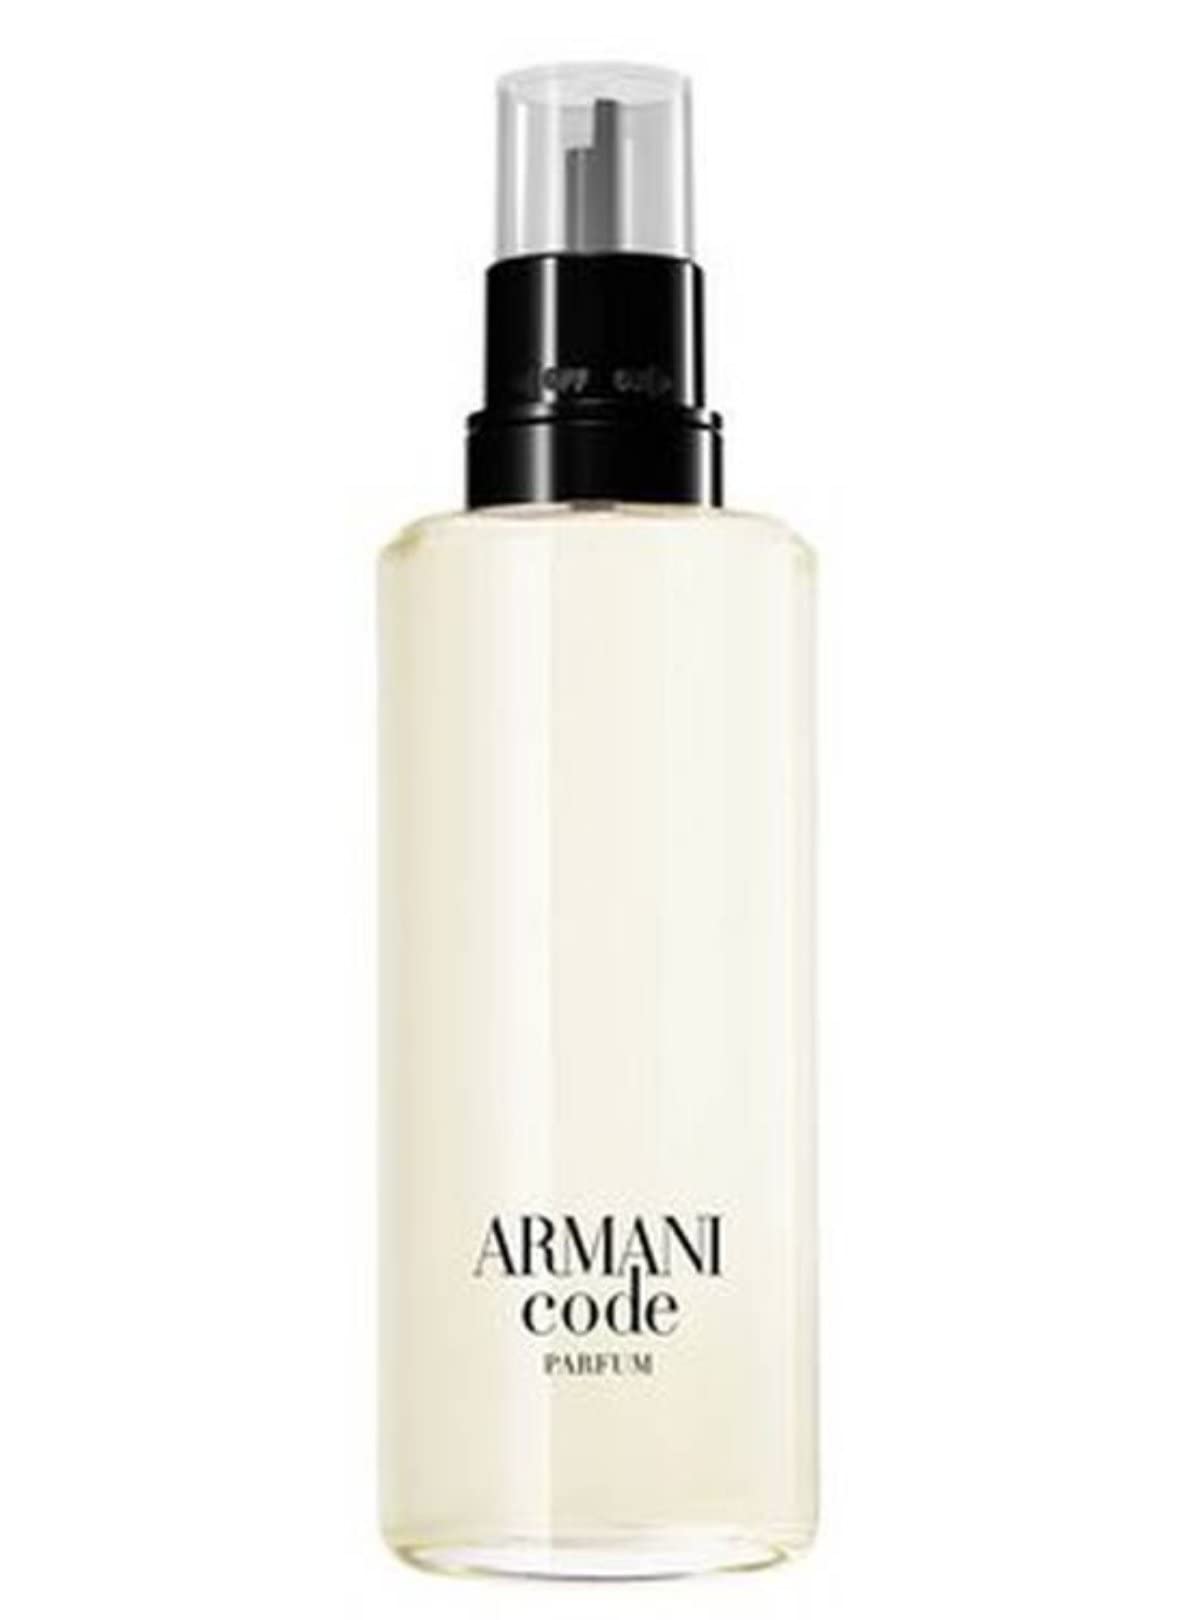 Giorgio Armani Armani Code Recharce Refill For Men - Parfum - 150ml